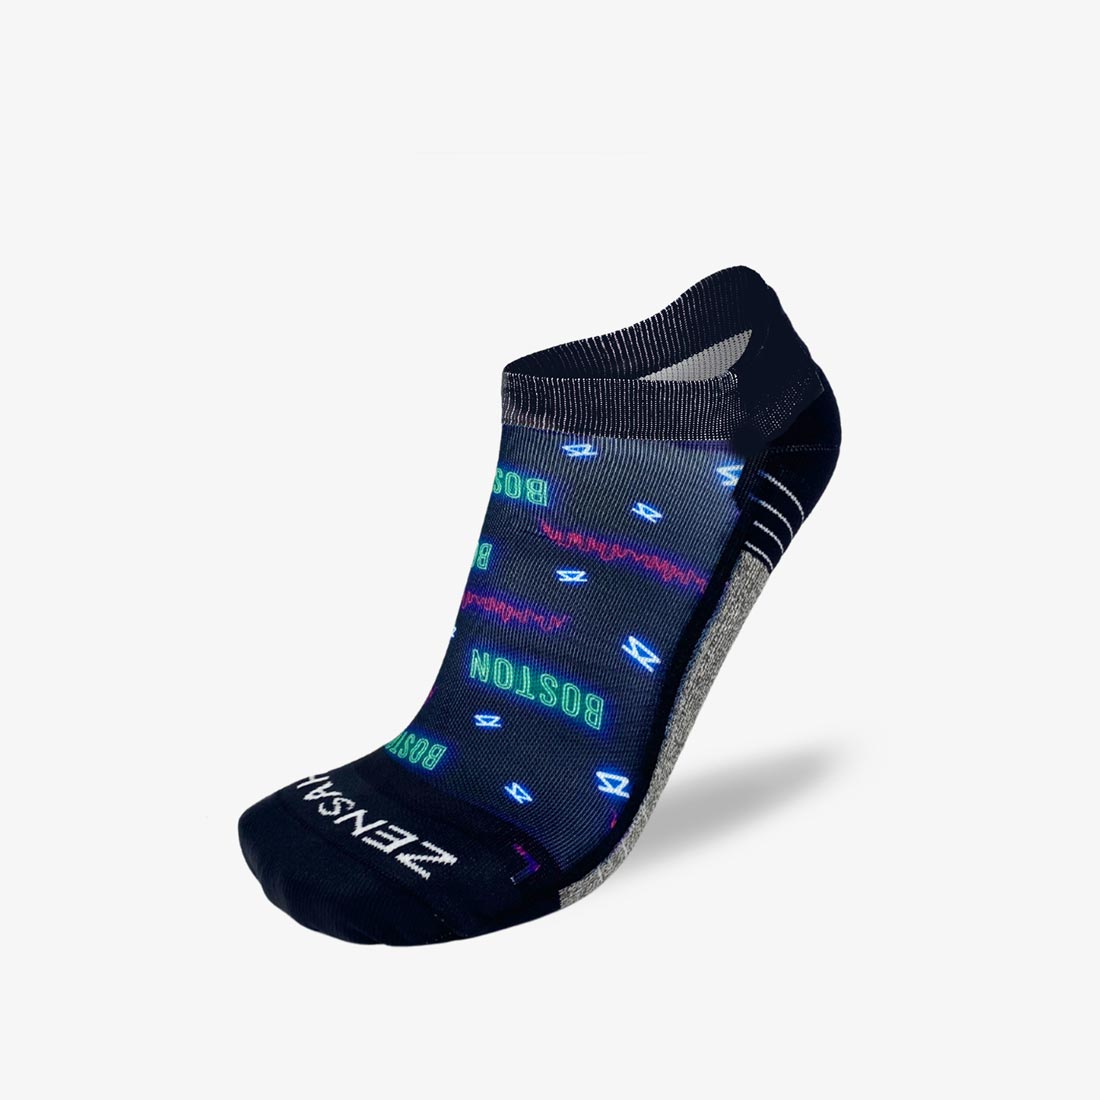 Neon Boston Running Socks (No Show)Socks - Zensah